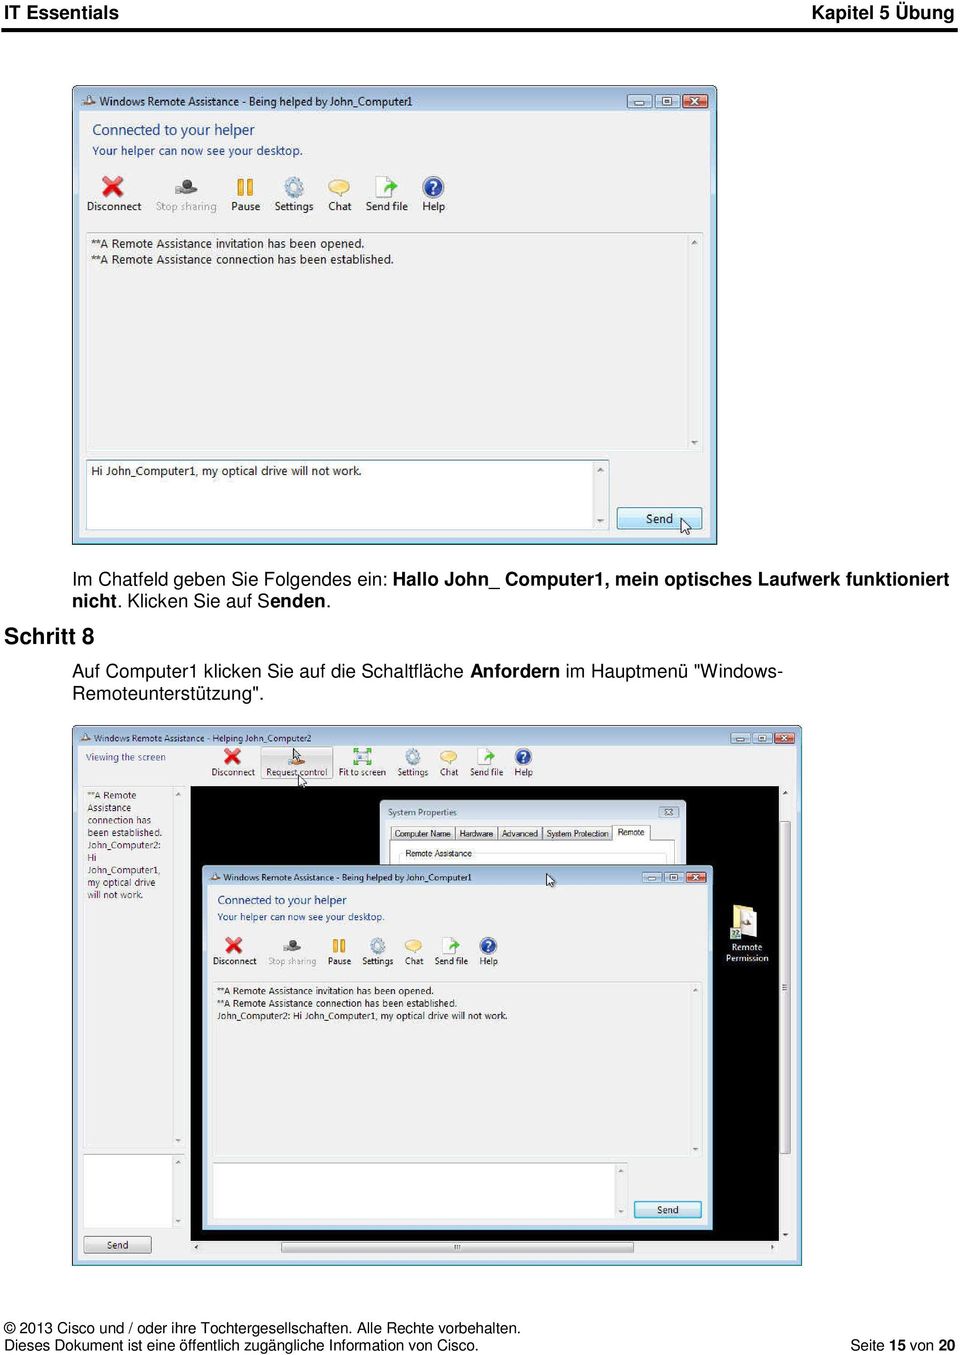 Auf Computer1 klicken Sie auf die Schaltfläche Anfordern im Hauptmenü "Windows-